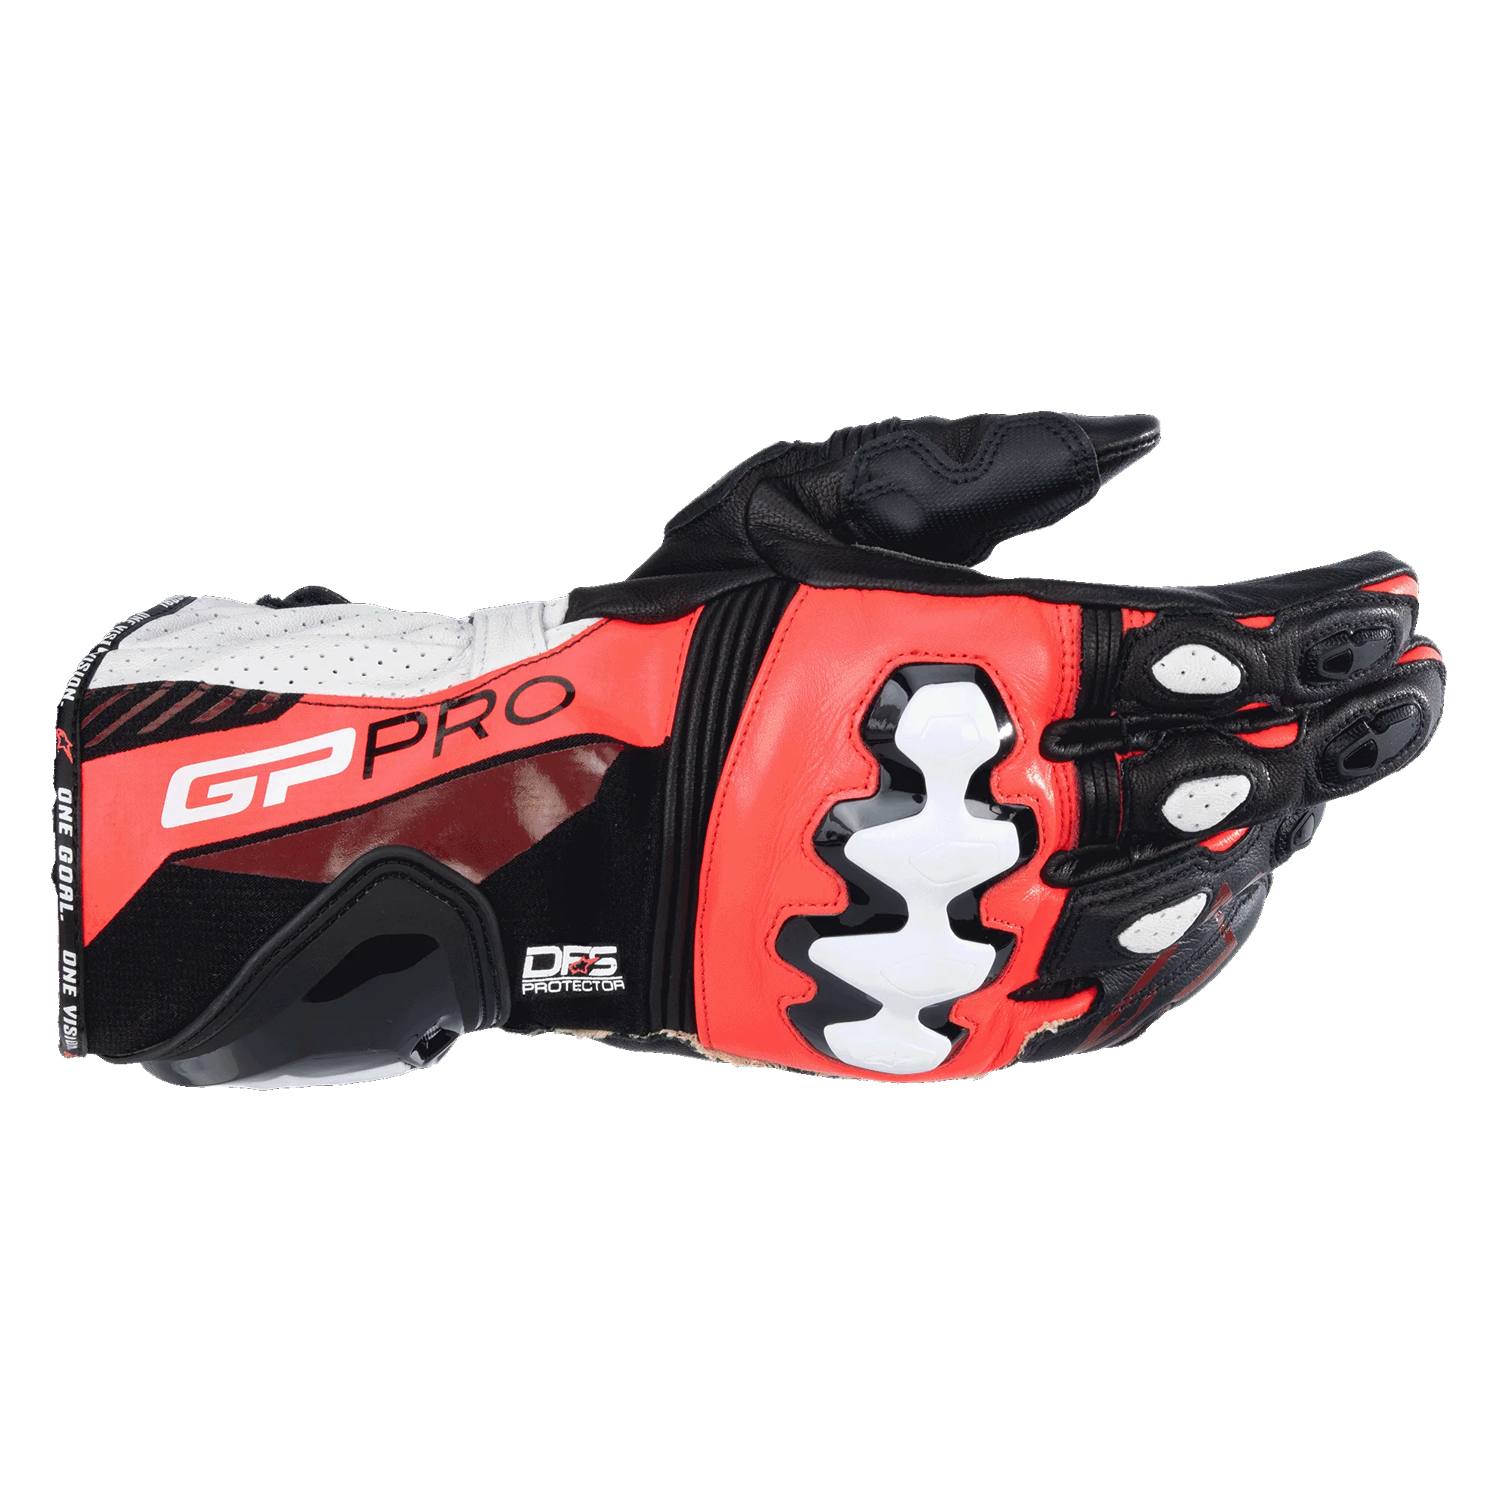 Alpinestars Gp Pro R4 Gloves Black Red Fluo White Größe